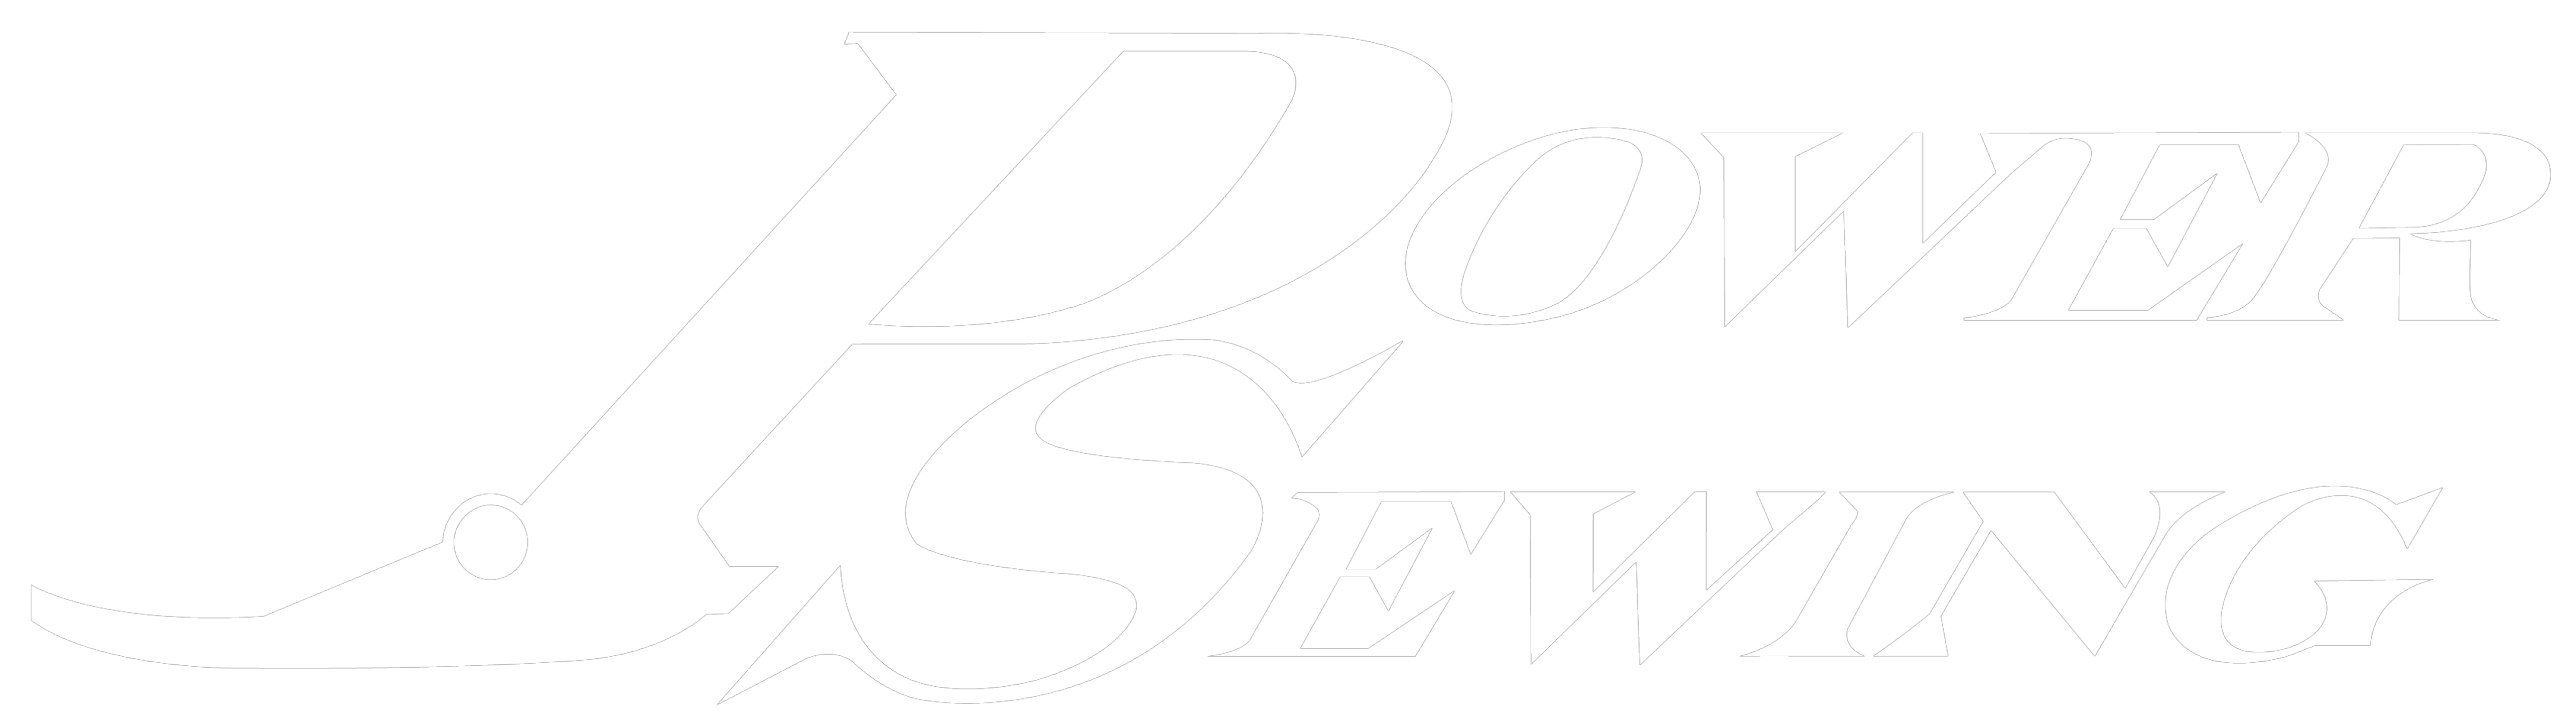 Power Sewing Logo